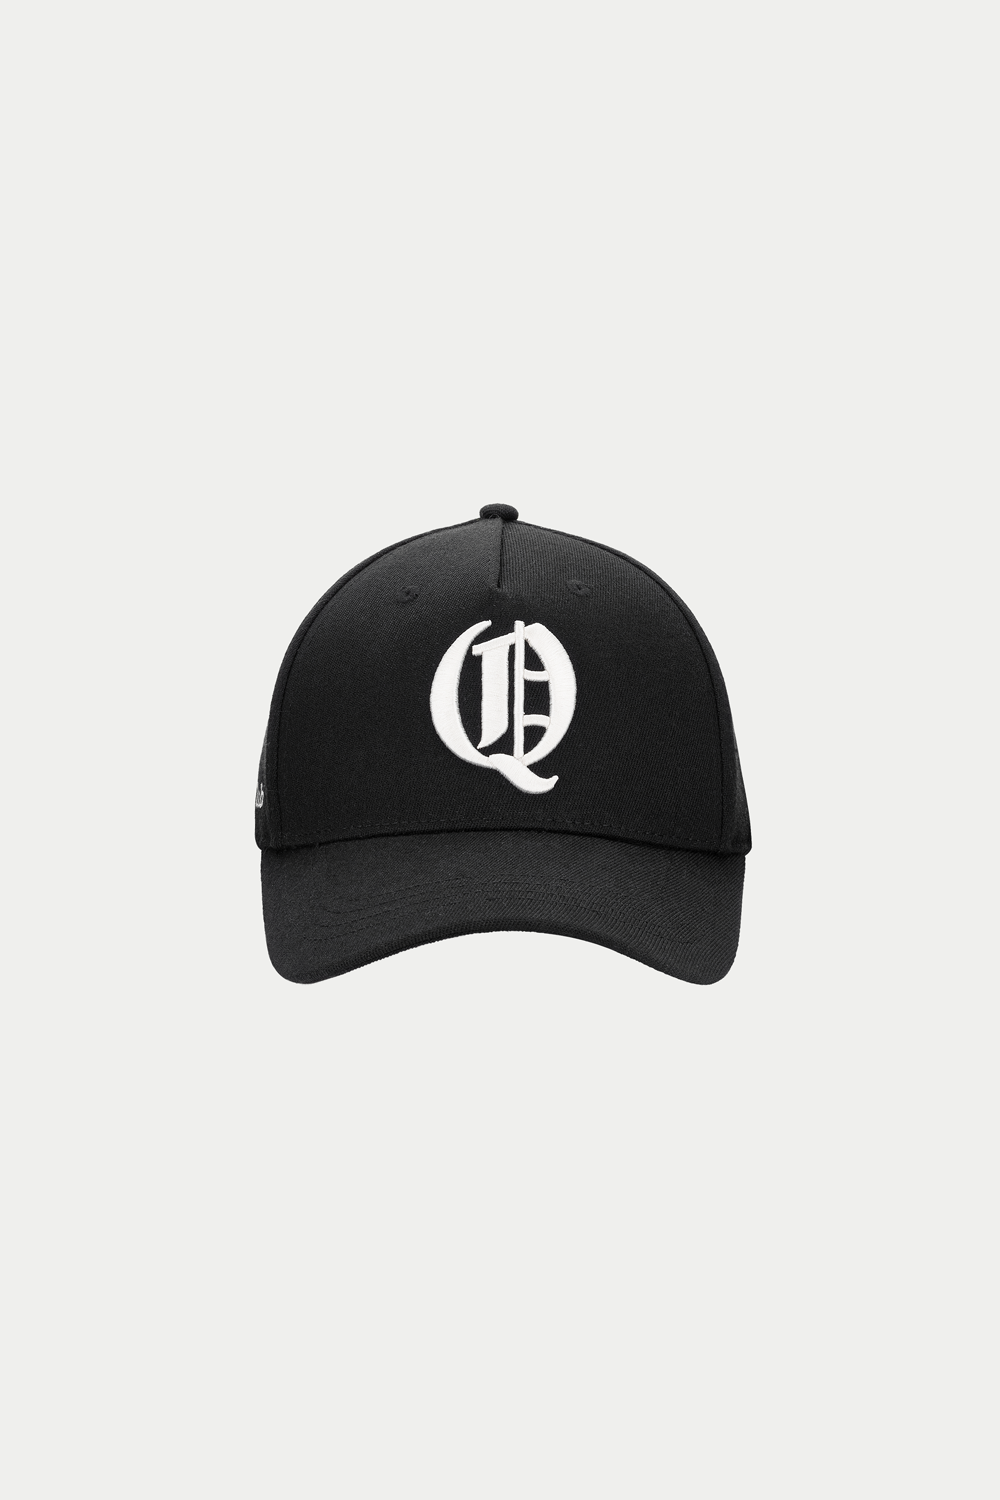 CREAM Q CAP